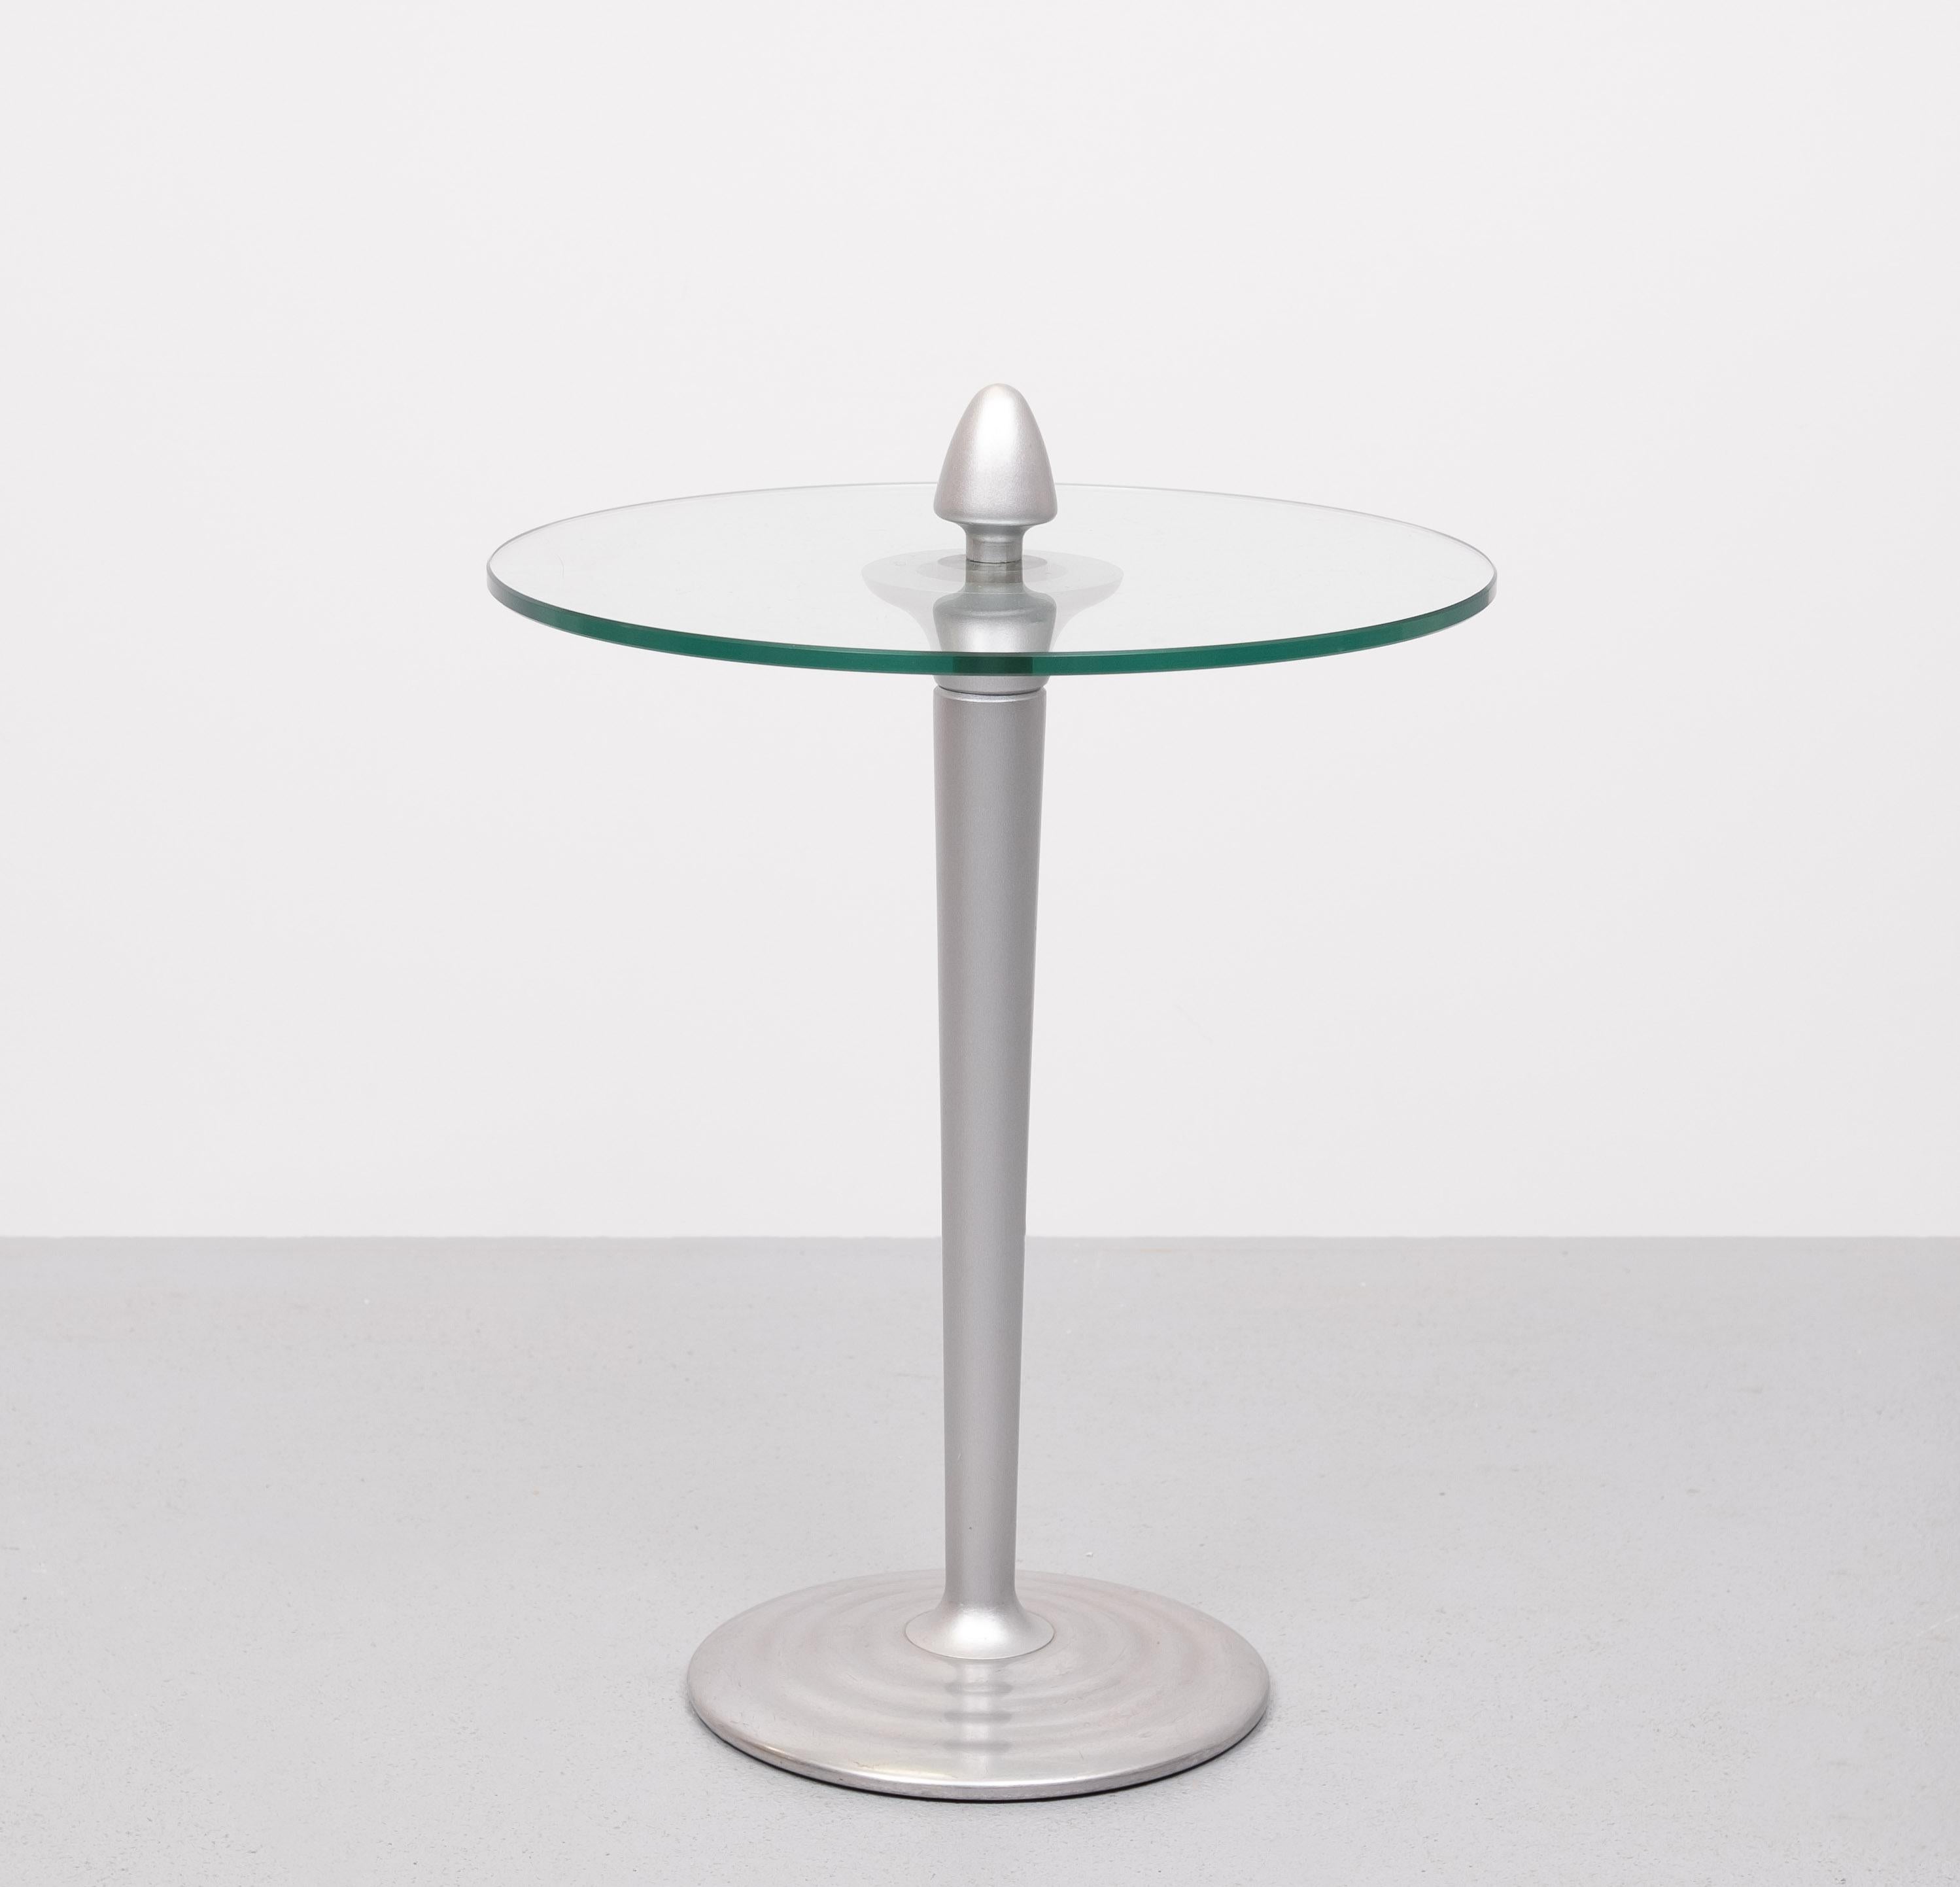 Sehr schöner Beistelltisch. Runde Glasplatte, Sockel aus Aluminiumguss.
Der Knauf an der Oberseite dient zum einfachen Tragen des Tisches. Tisch von guter Qualität . 